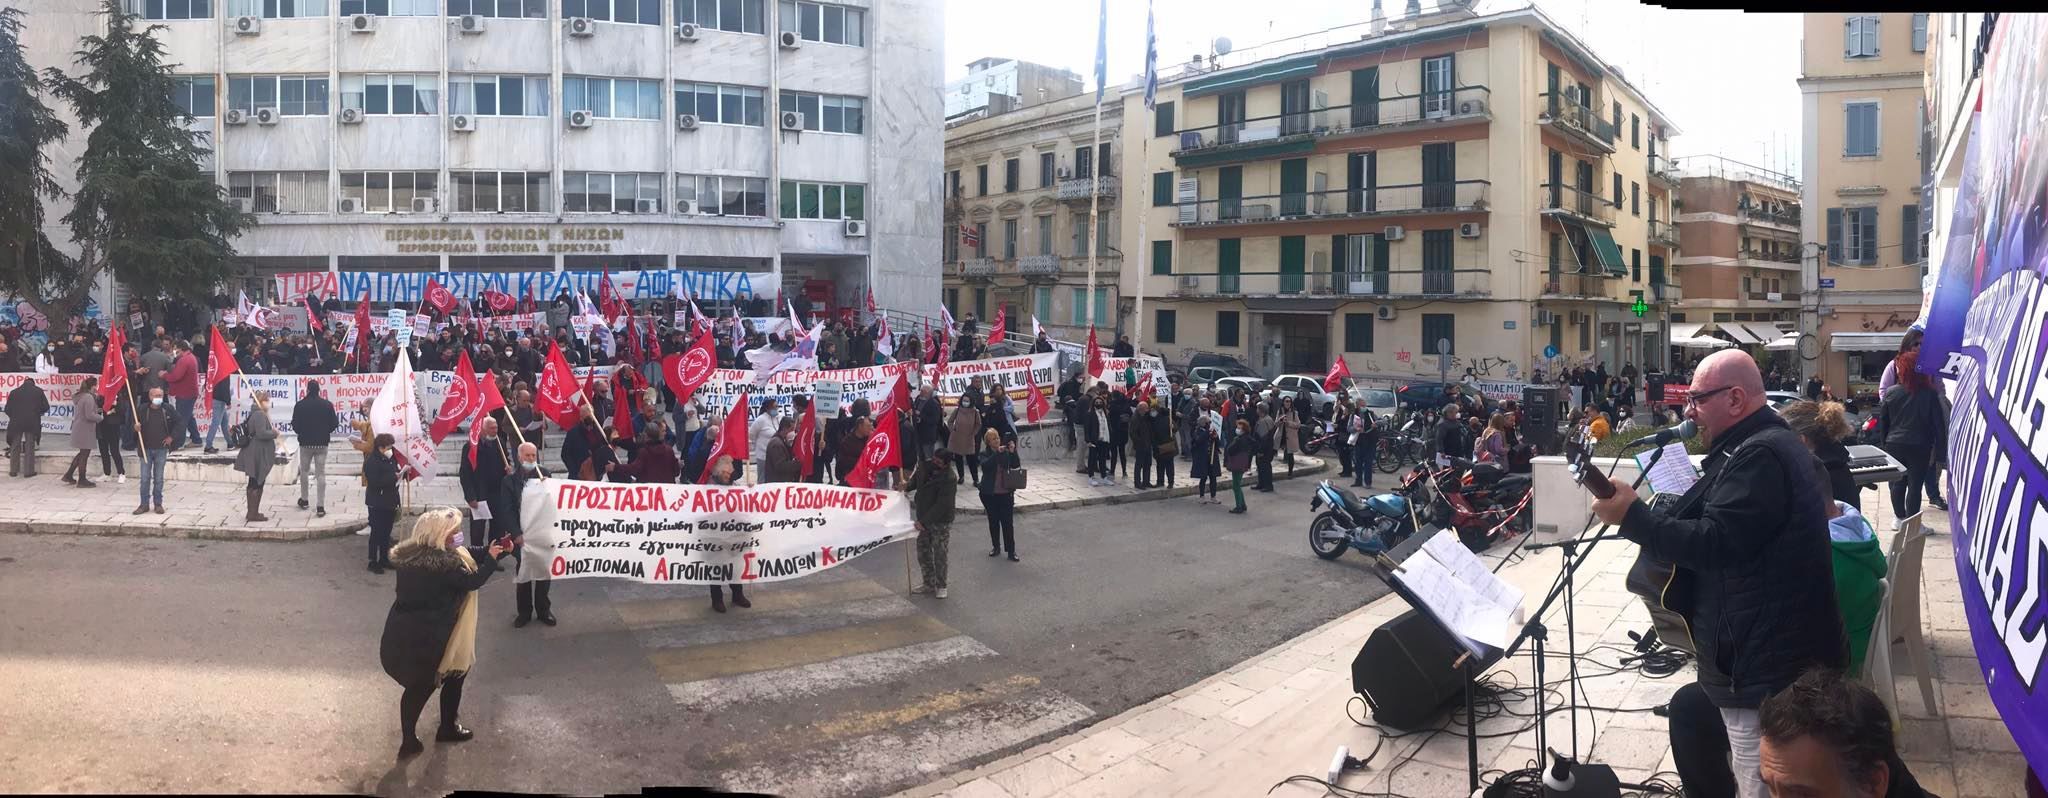 Κέρκυρα: Δυναμικό και μαζικό το συλλαλητήριο ενάντια στην ακρίβεια